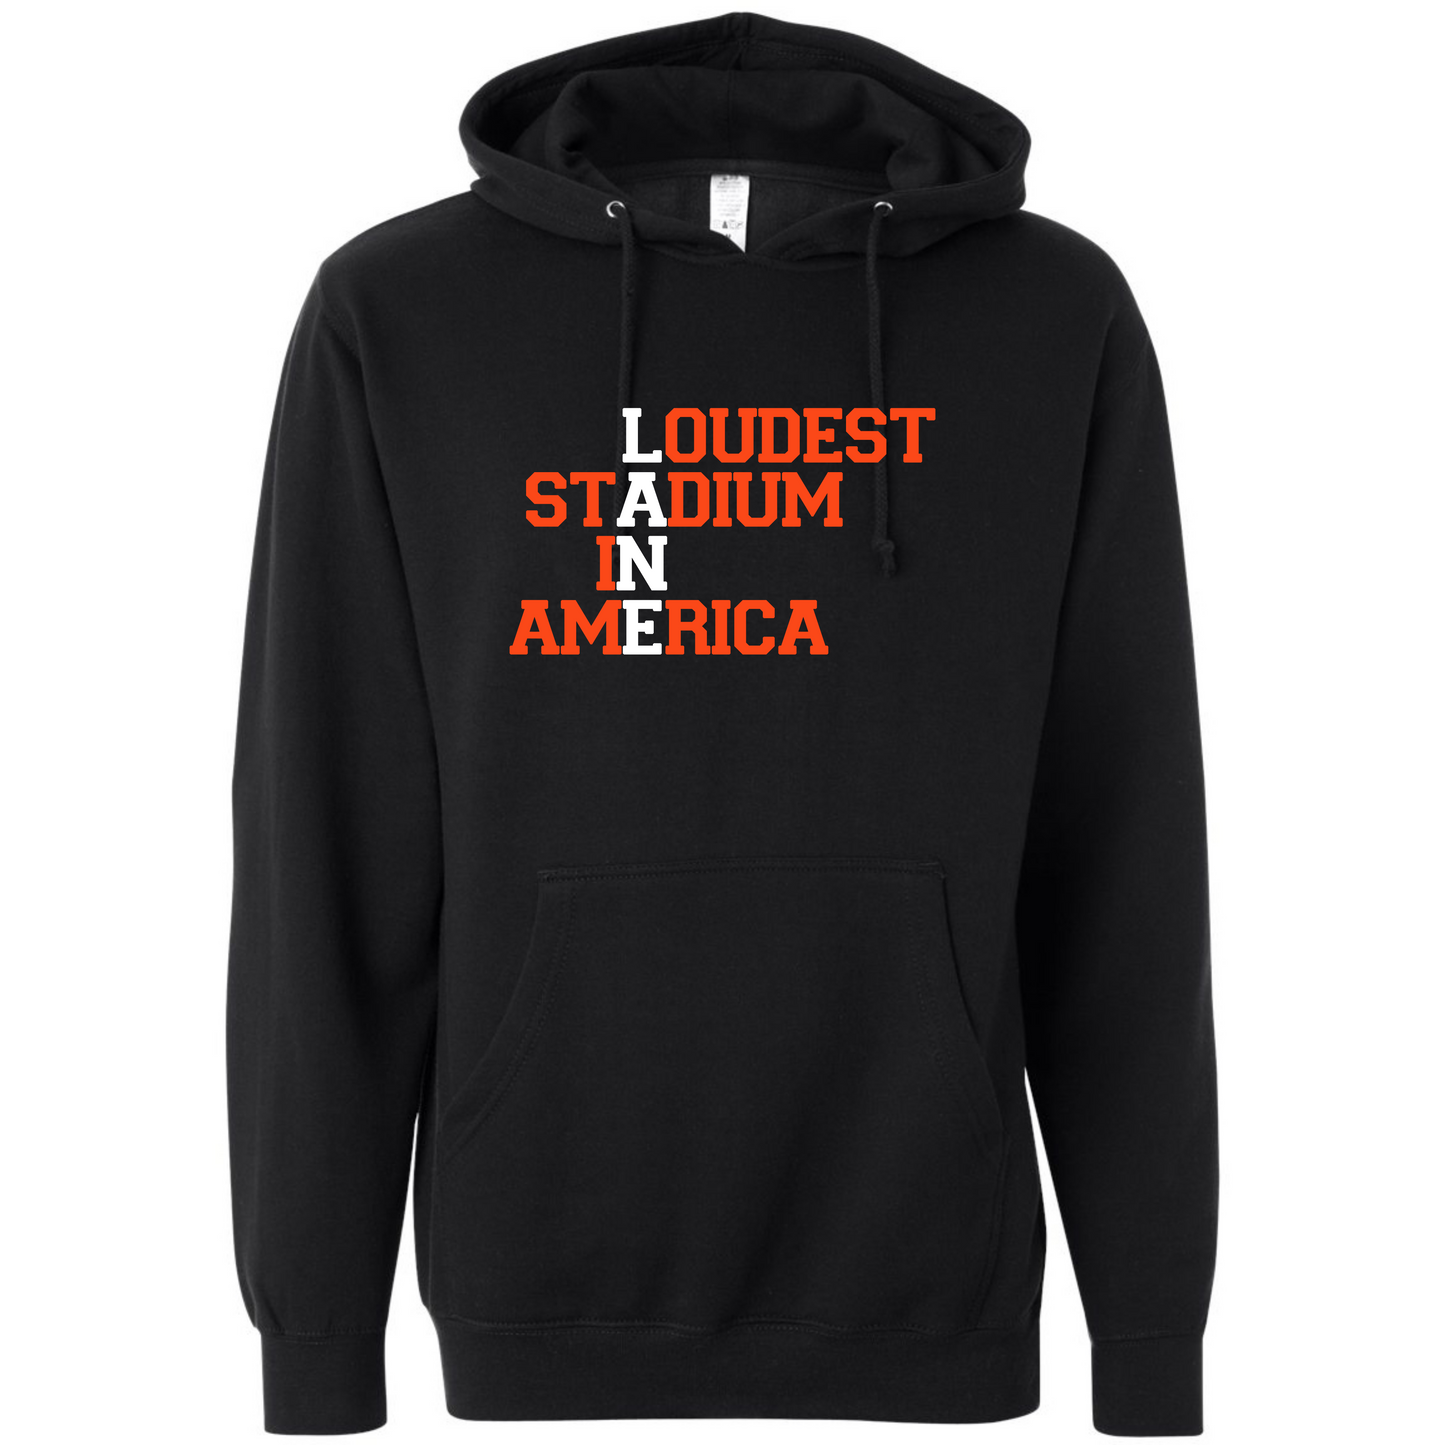 Loudest Stadium in America